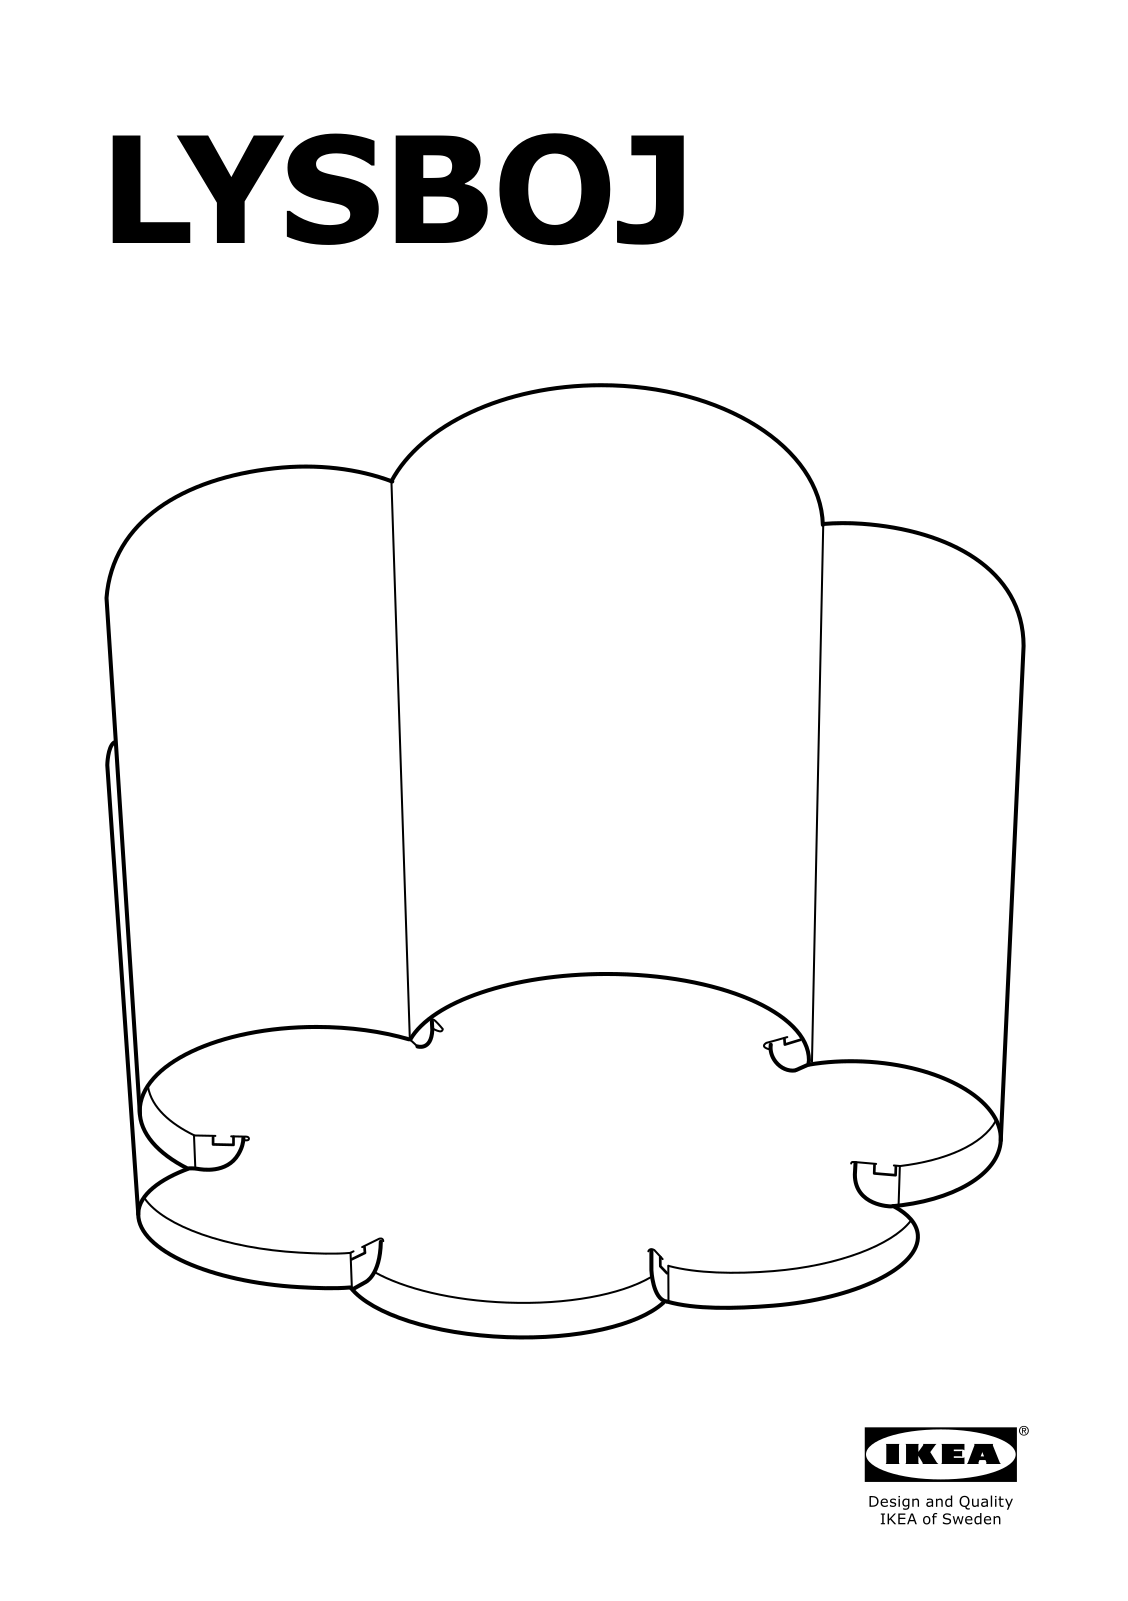 IKEA LYSBOJ User Manual